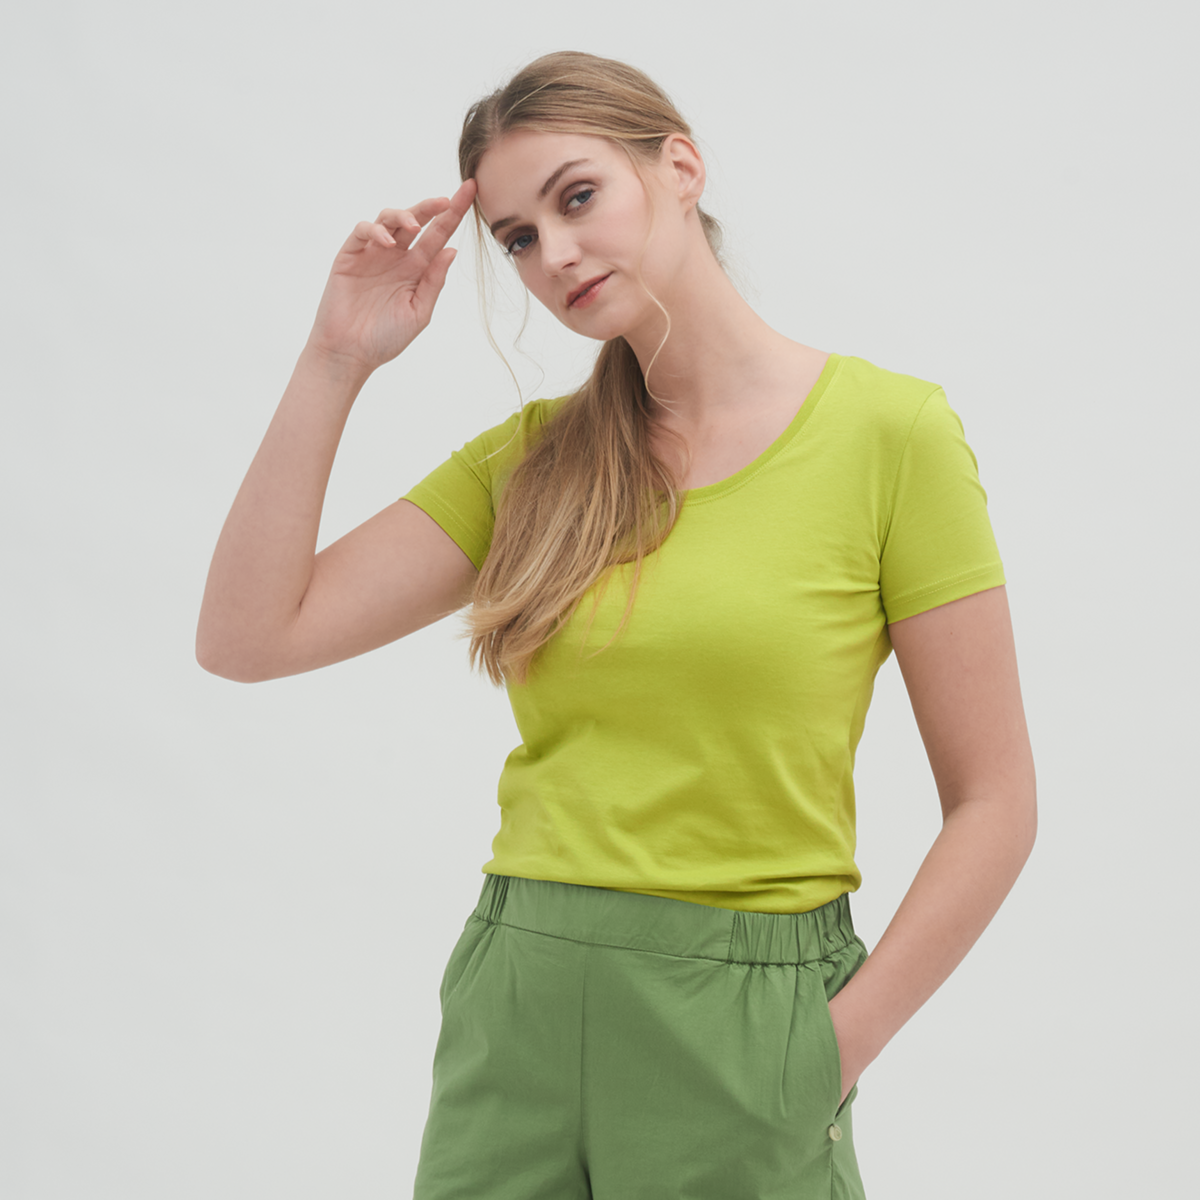 Grün Damen T-Shirt